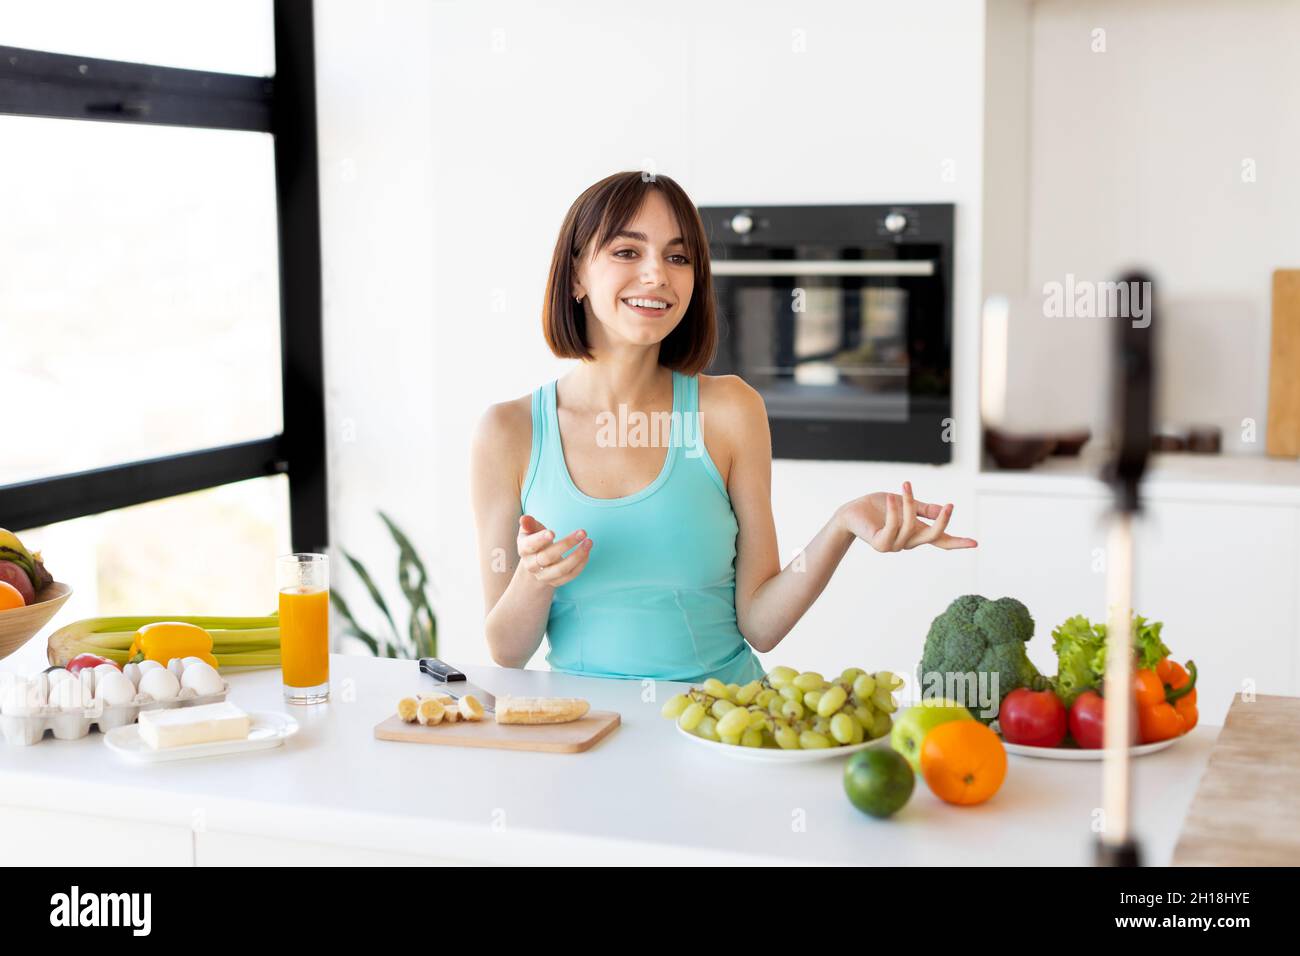 Concept de blogueur de nourriture.Femme millénaire enregistrant une nouvelle recette vidéo sur smartphone, debout dans un intérieur de cuisine moderne Banque D'Images